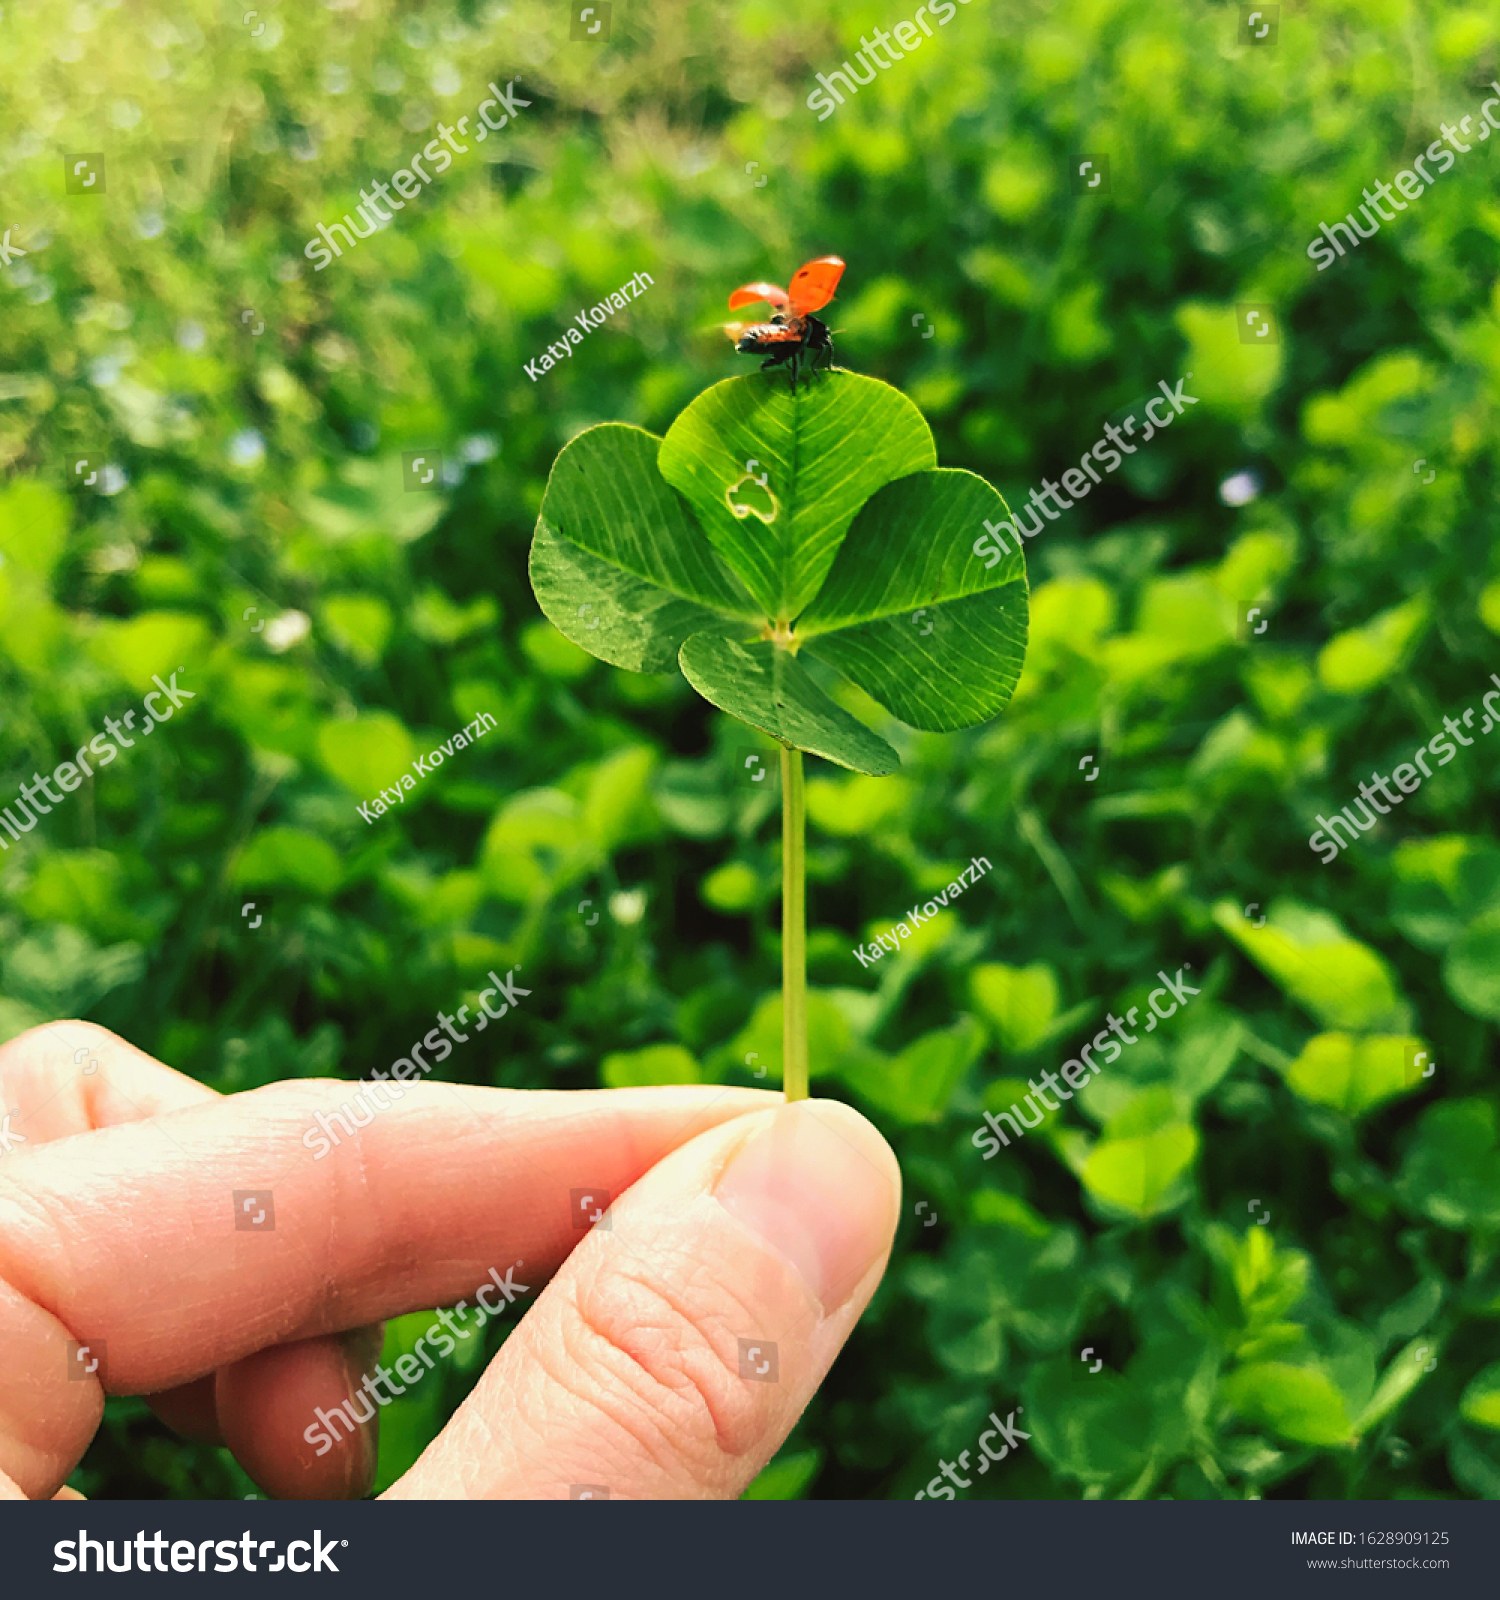 Four-leaf clover with a ladybug. Lucky charm. #1628909125